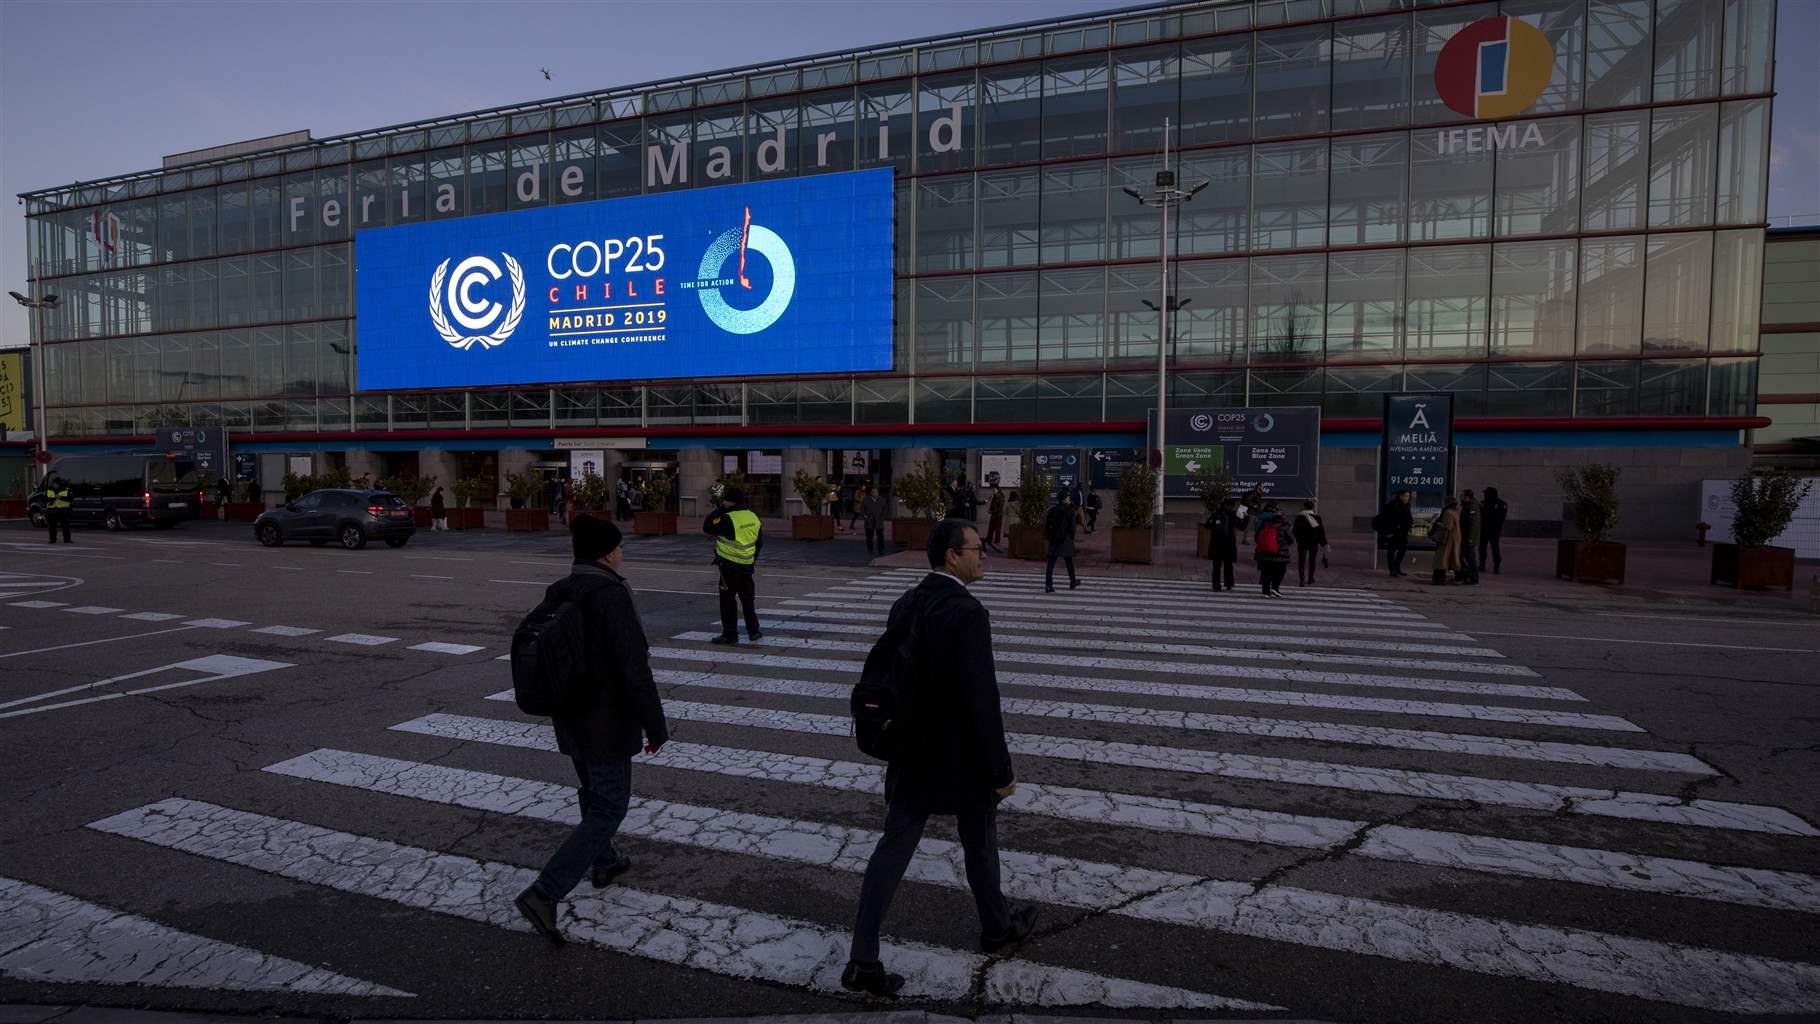 COP25 Madrid